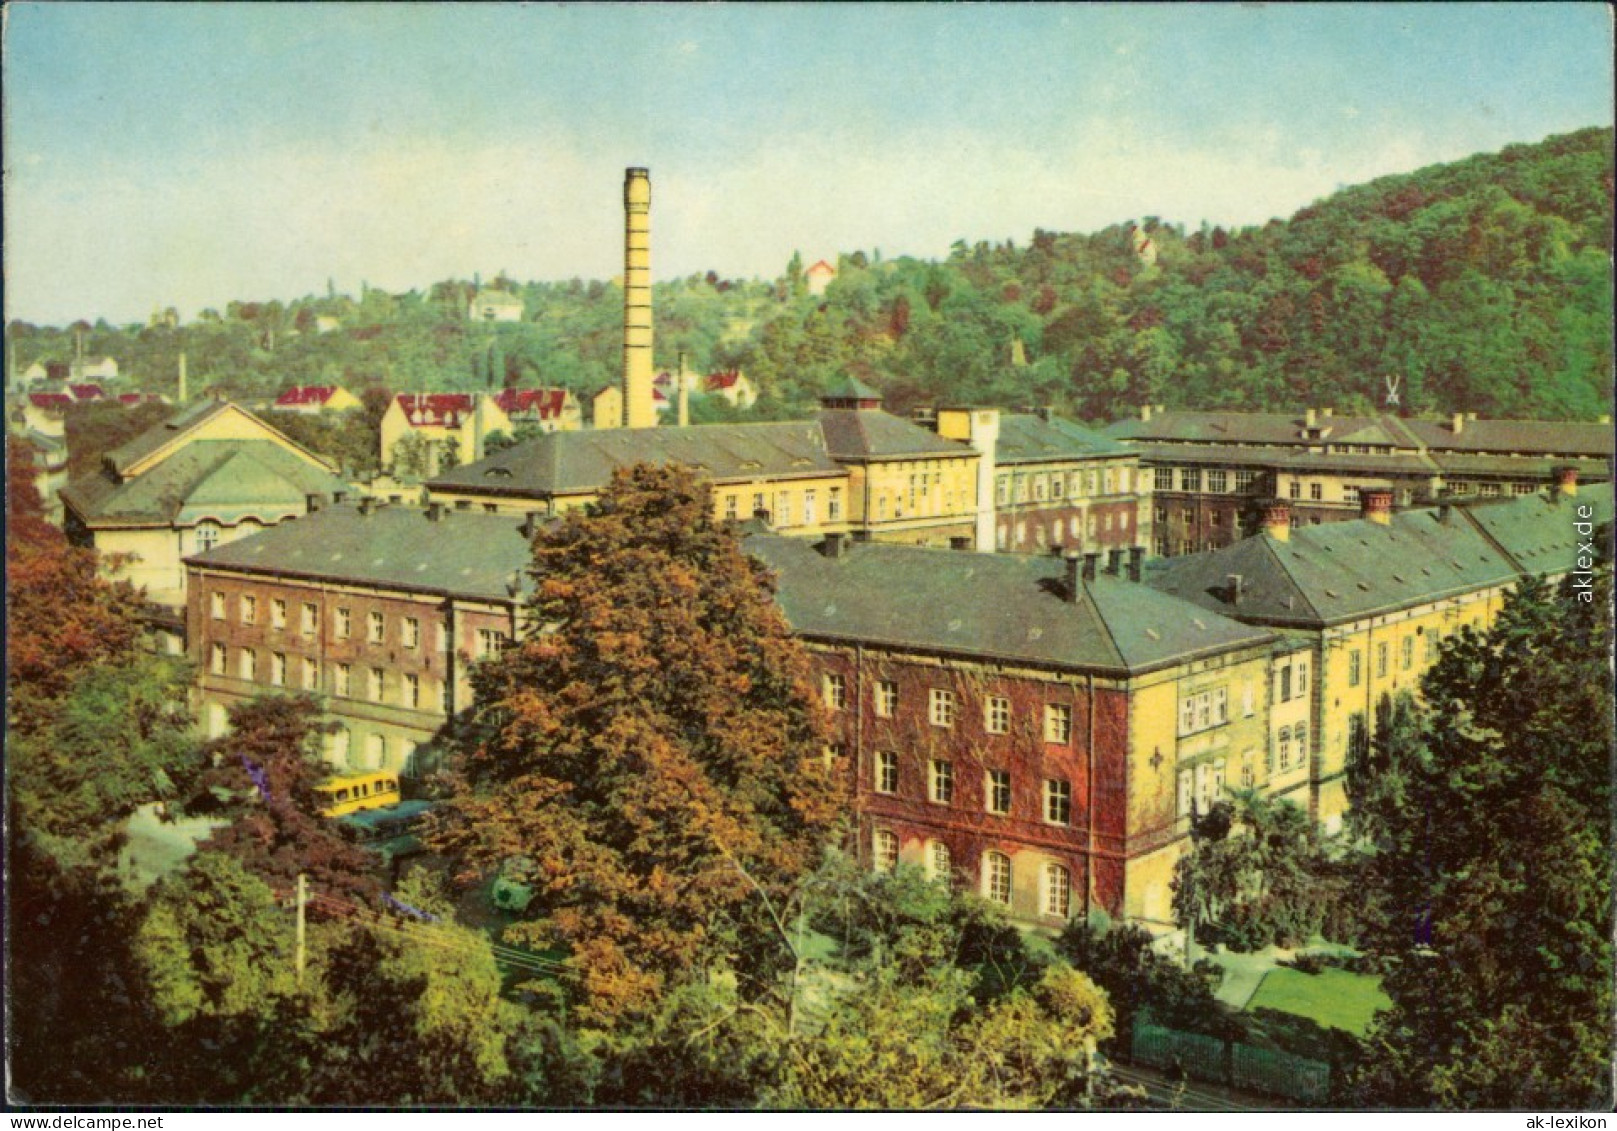 Ansichtskarte Meißen VEB Staatliche Porzellan-Manufaktur - Werksansicht 1966 - Meissen